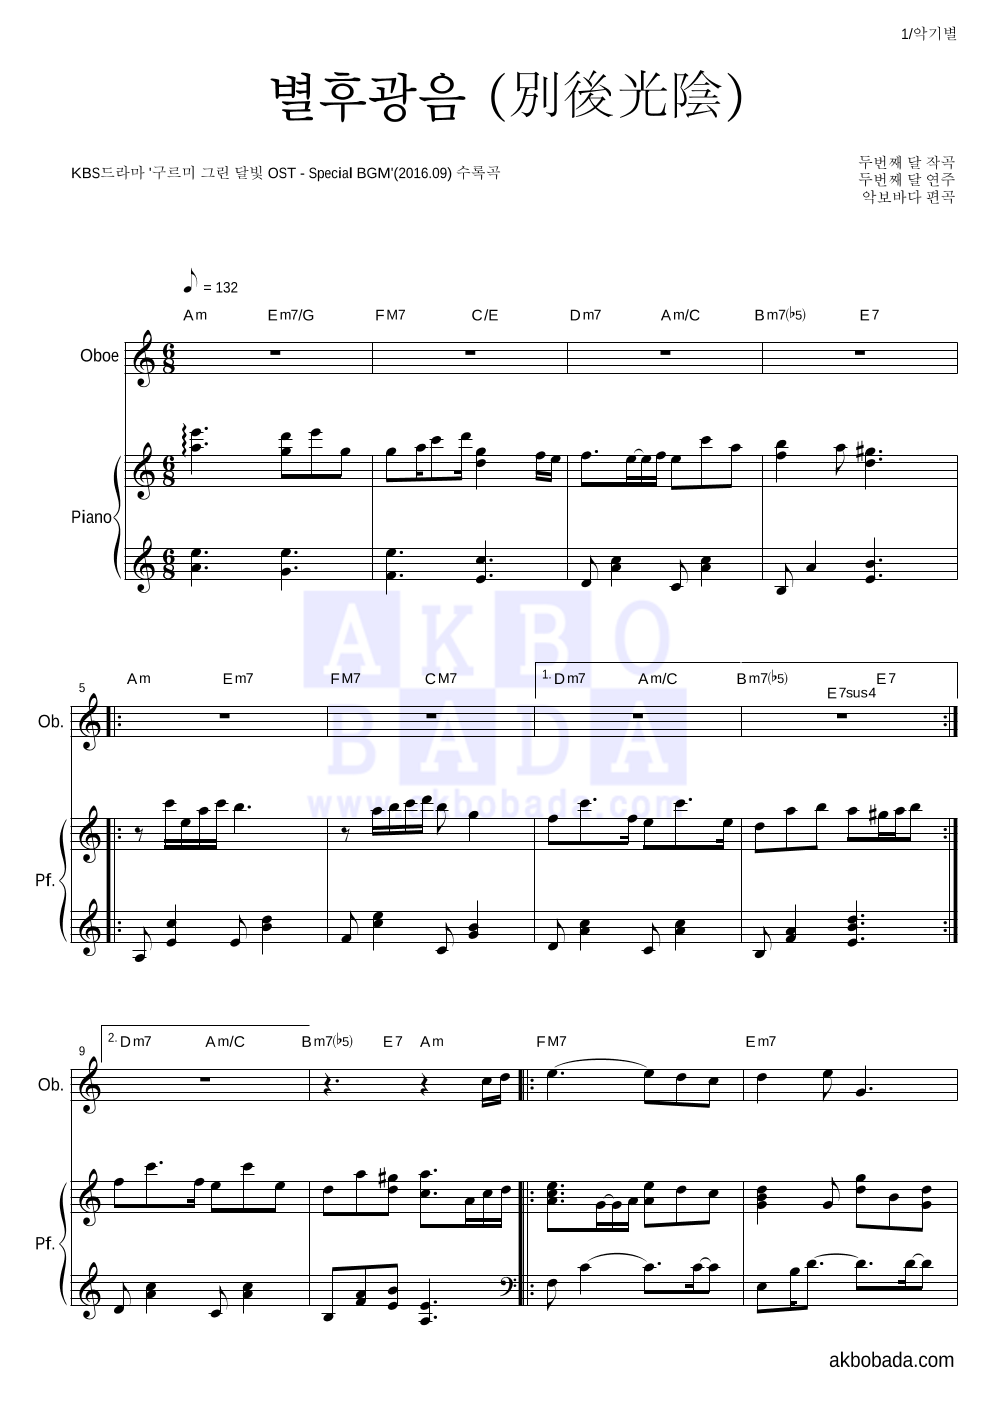 두번째 달 - 별후광음 (別後光陰) 오보에&피아노 악보 